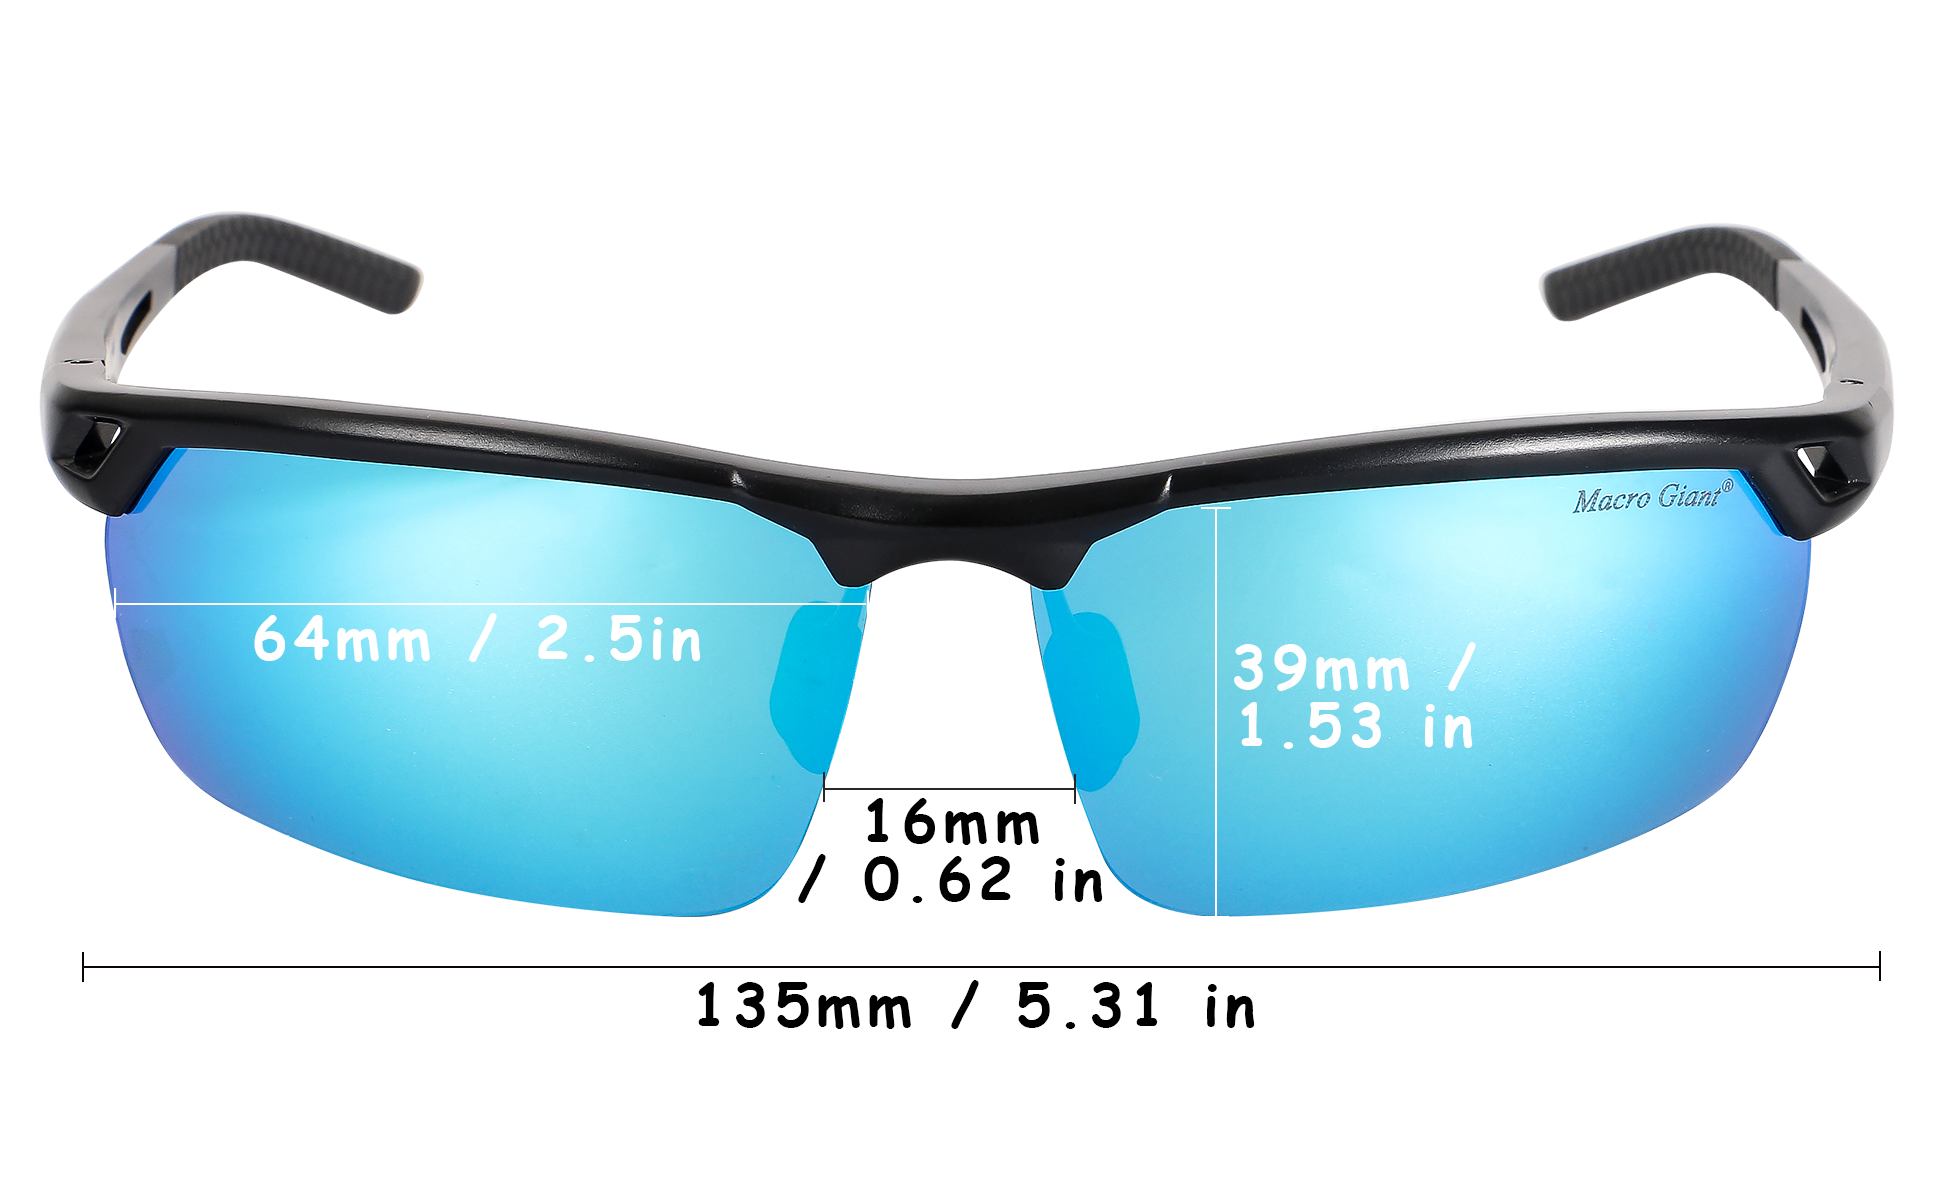 Macro Giant Sport Sunglasses, Black Frame, Dark Gray Lens